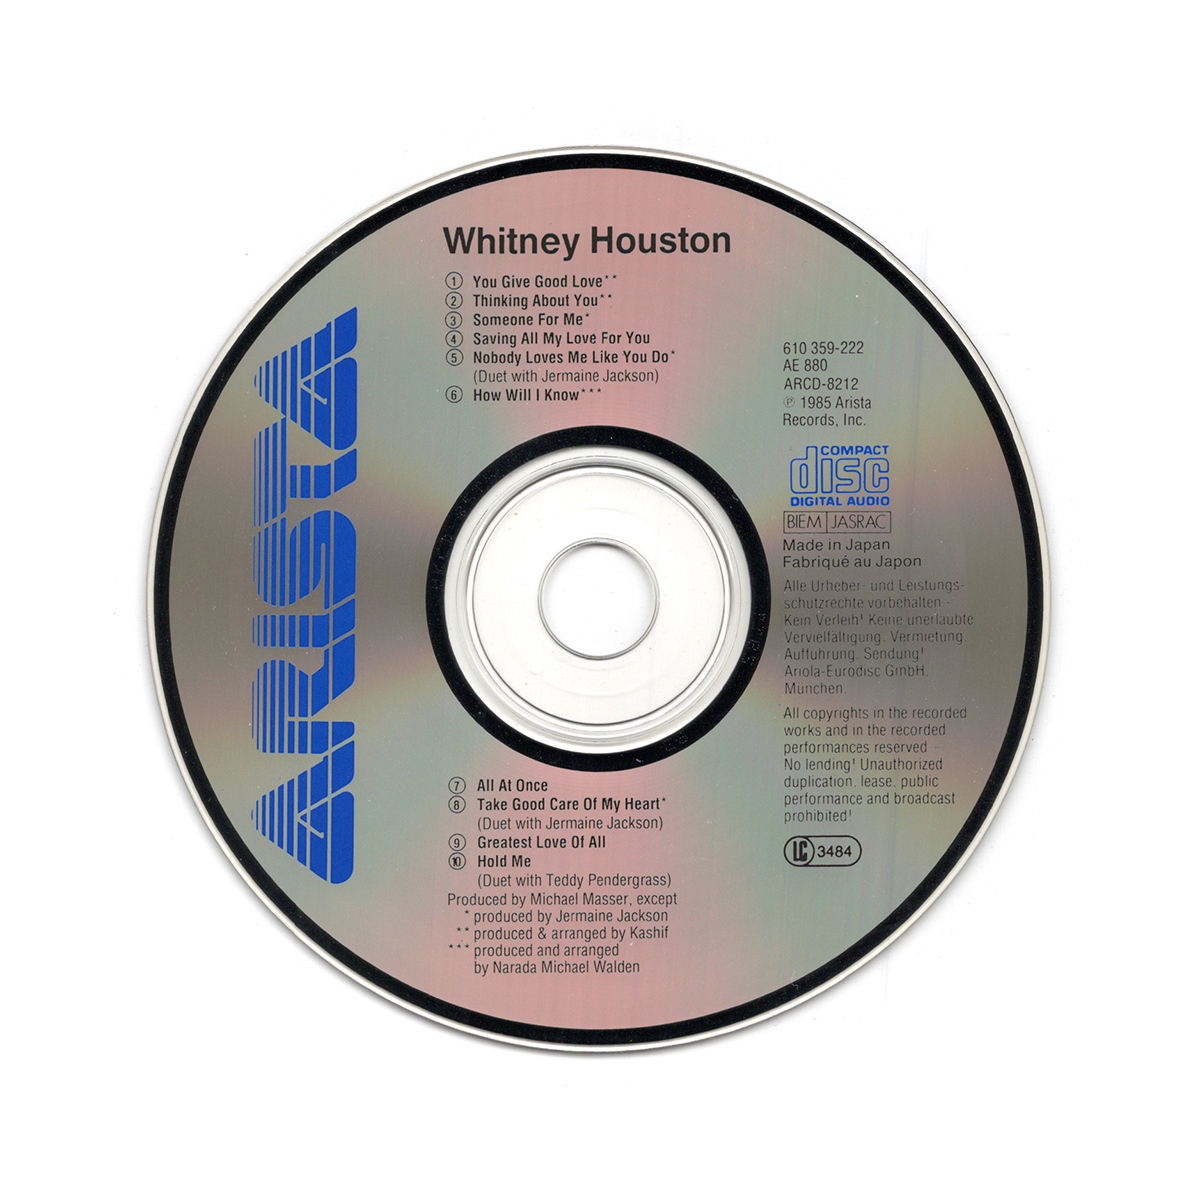 EU初リリース盤 《CD》 Whitney Houston / ホイットニー・ヒューストン [610 359-222]_画像5